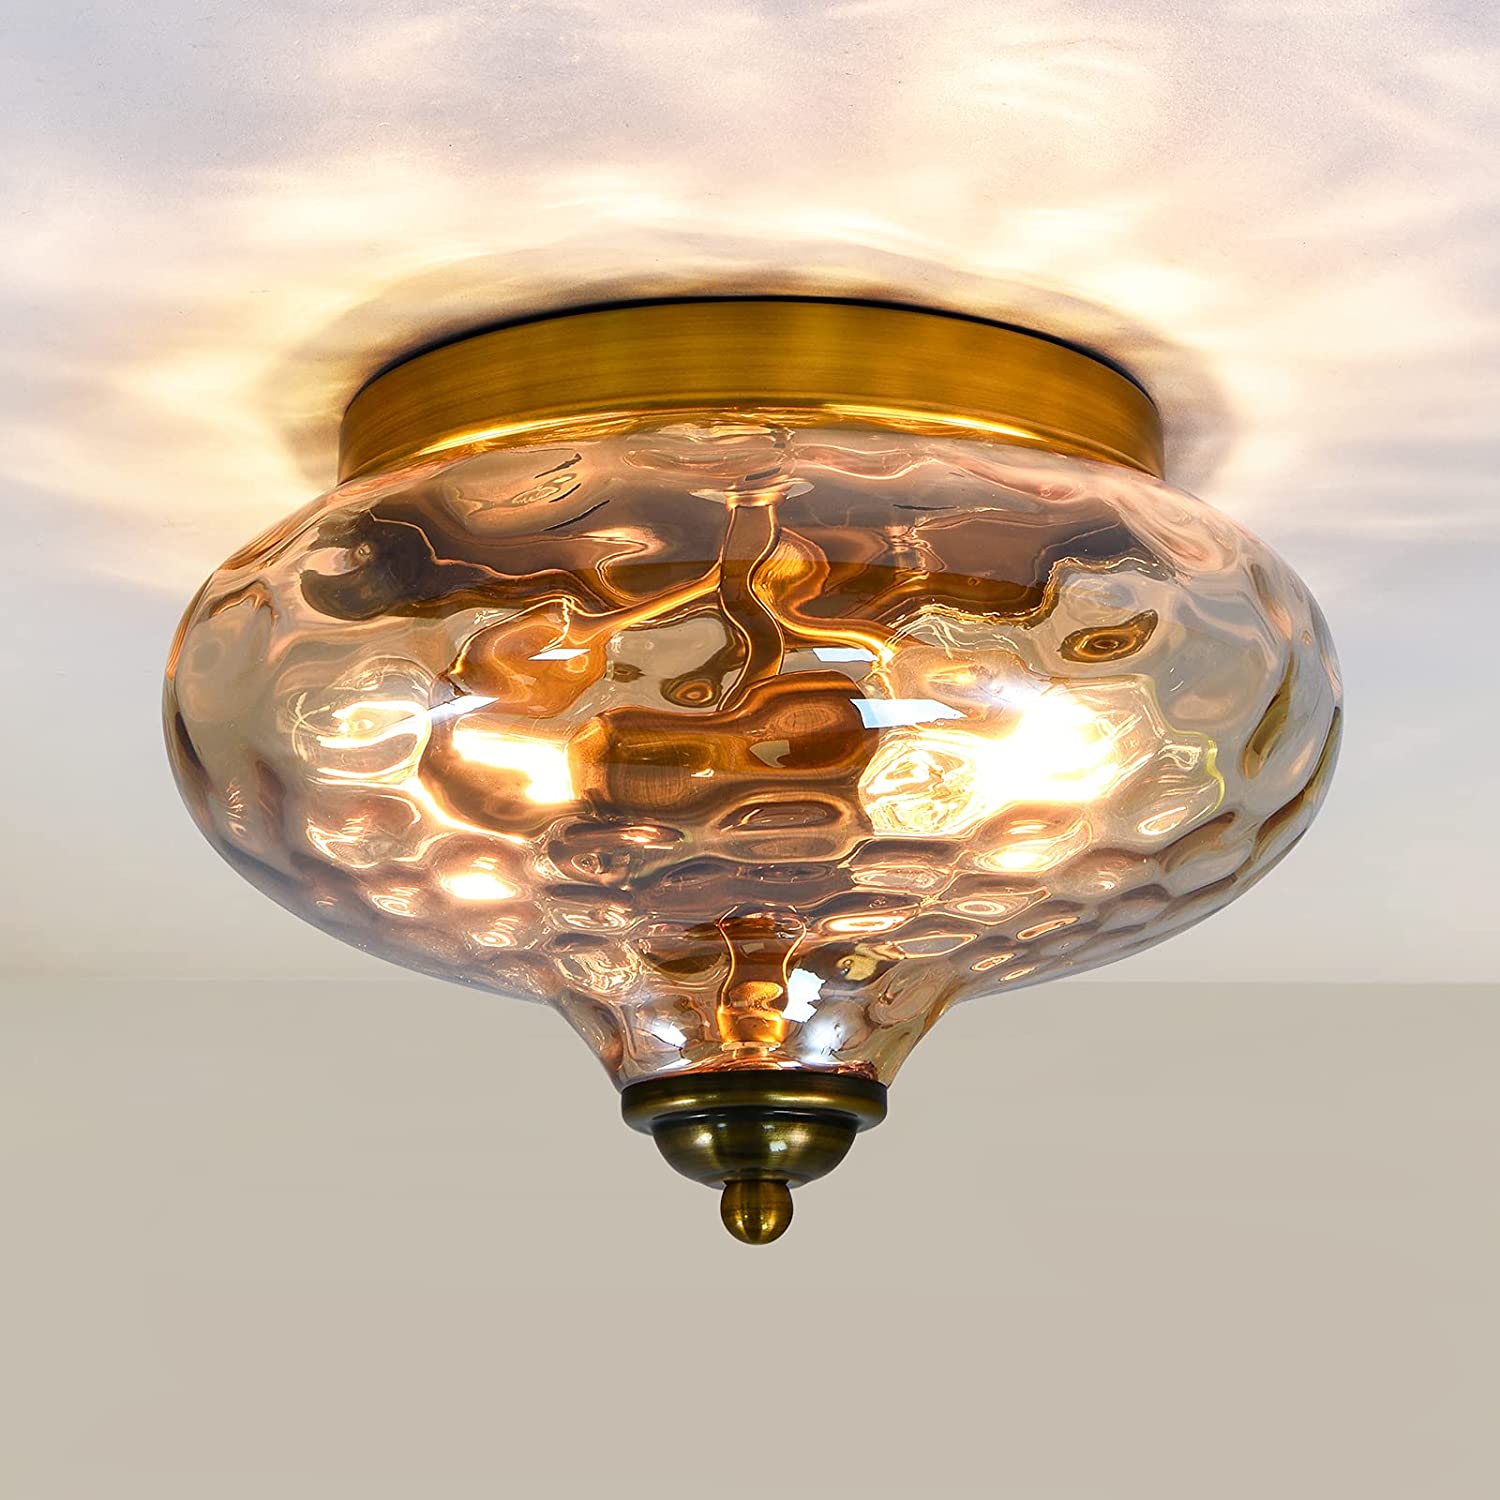 2 light glass flush mount light modern ceiling lamp for hallway